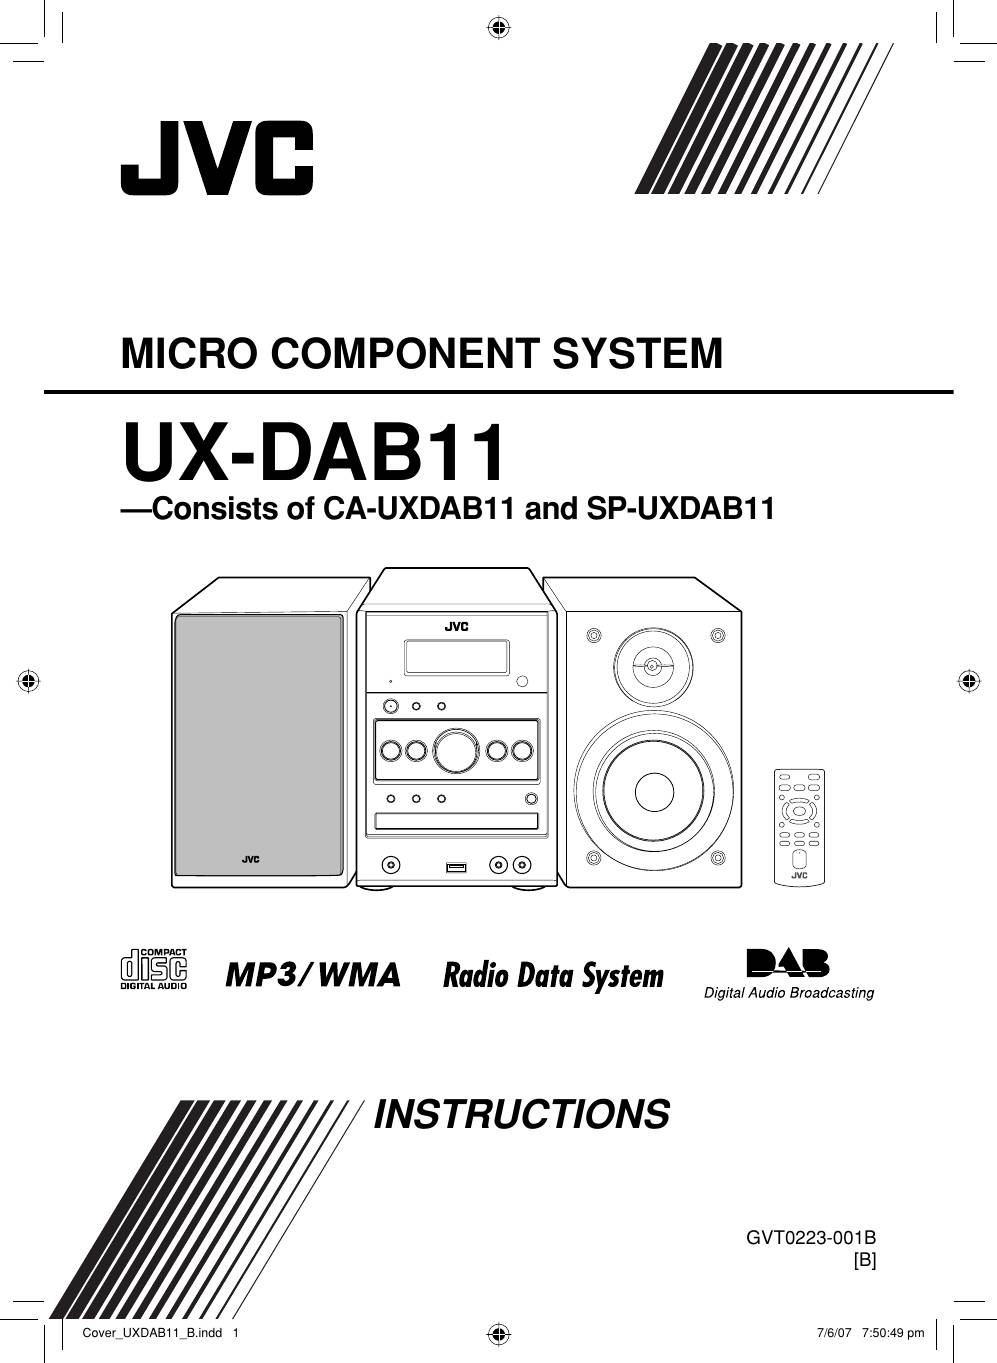 JVC UX-DAB11